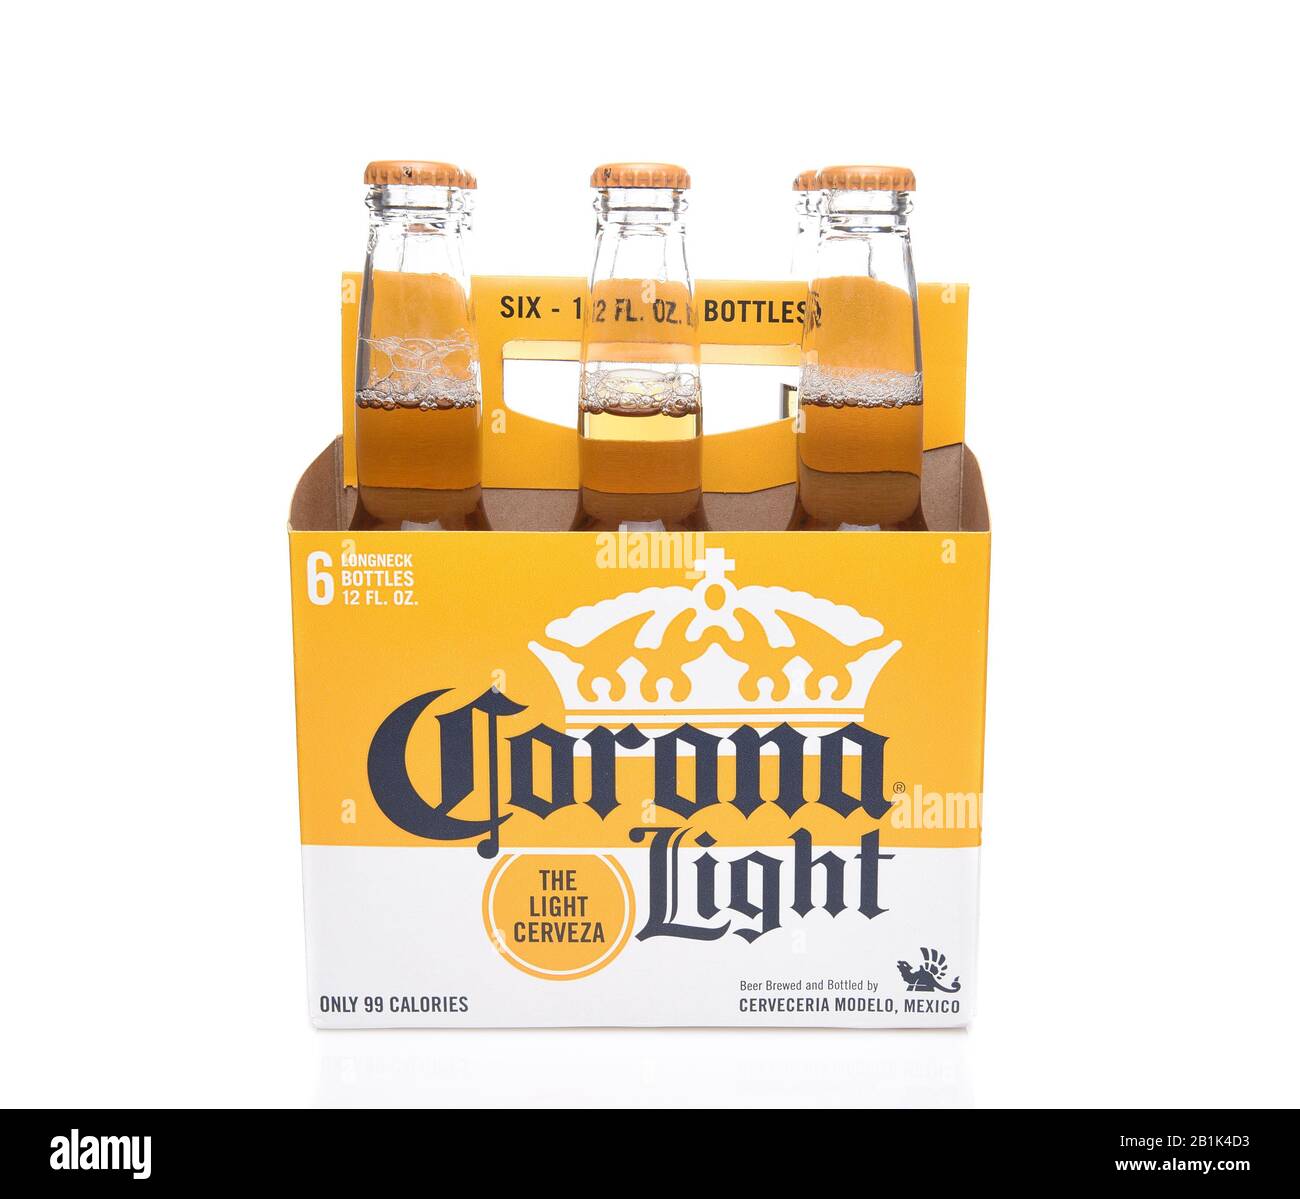 Irvine, KALIFORNIEN - 14. DEZEMBER 2017: 6 Stück Corona-Light-Bierflaschen. Corona ist das beliebteste Importbier in den USA. Stockfoto